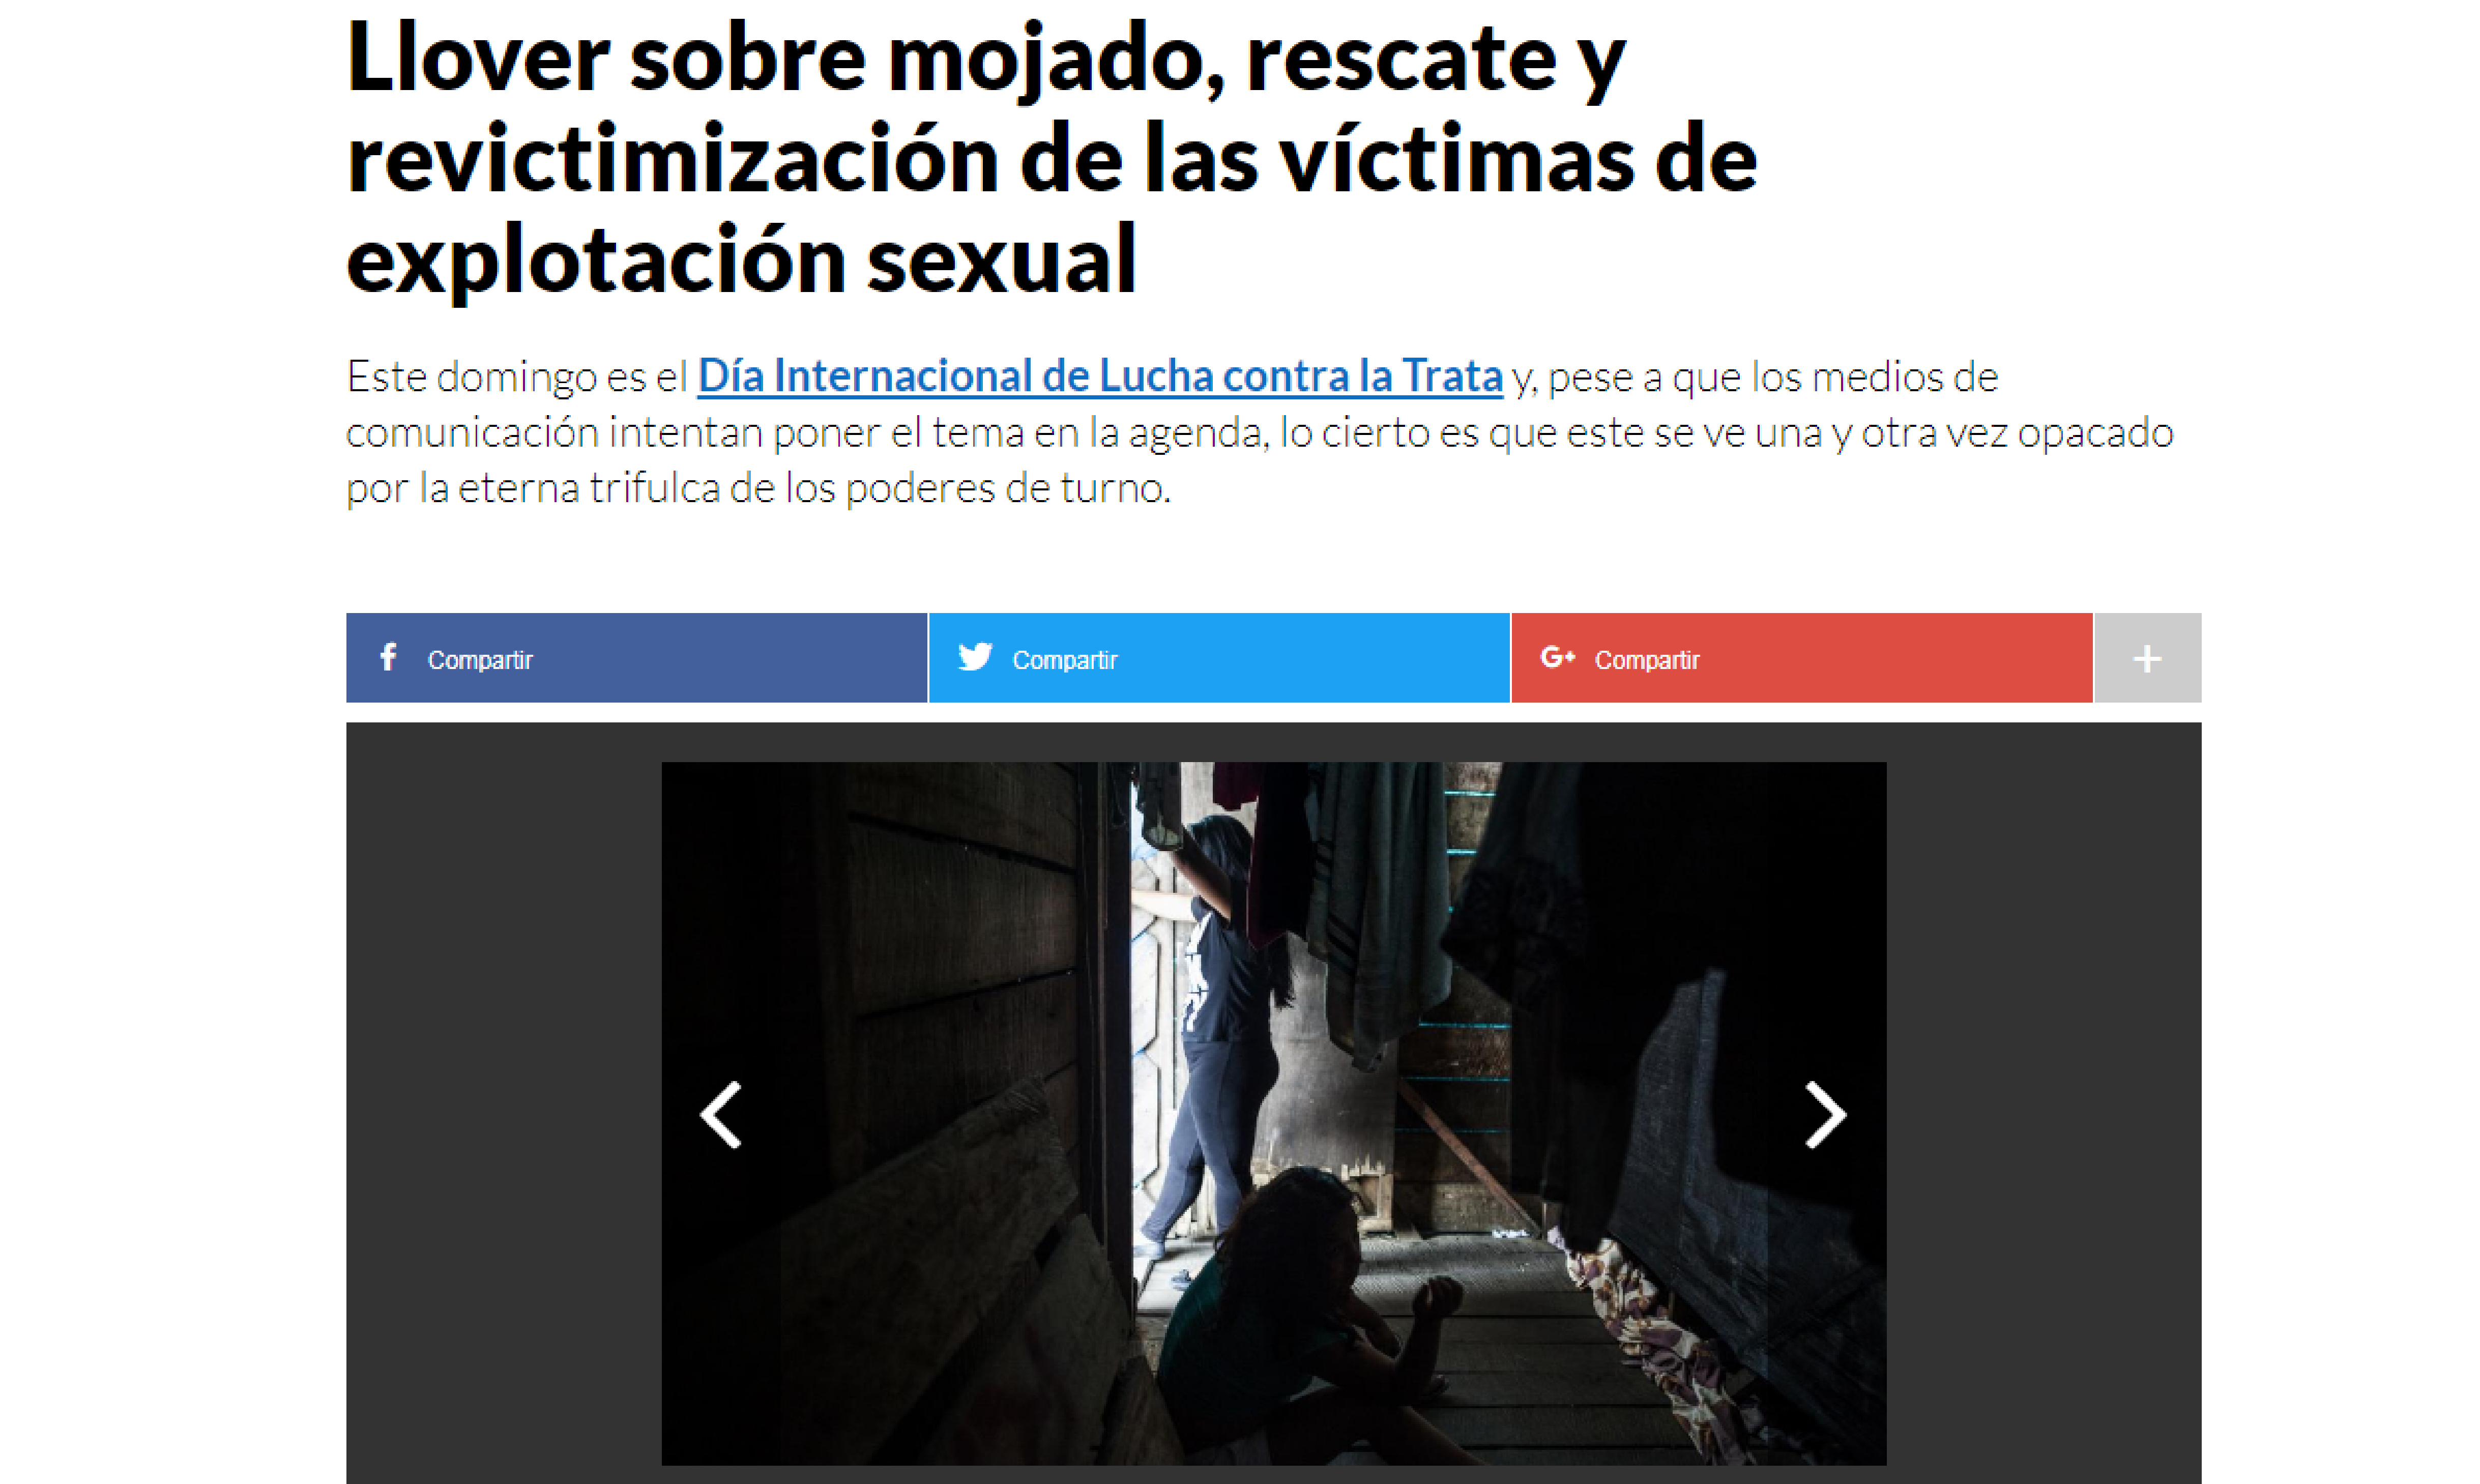 Perú 21: Llover sobre mojado, rescate y revictimización de las víctimas de explotación sexual